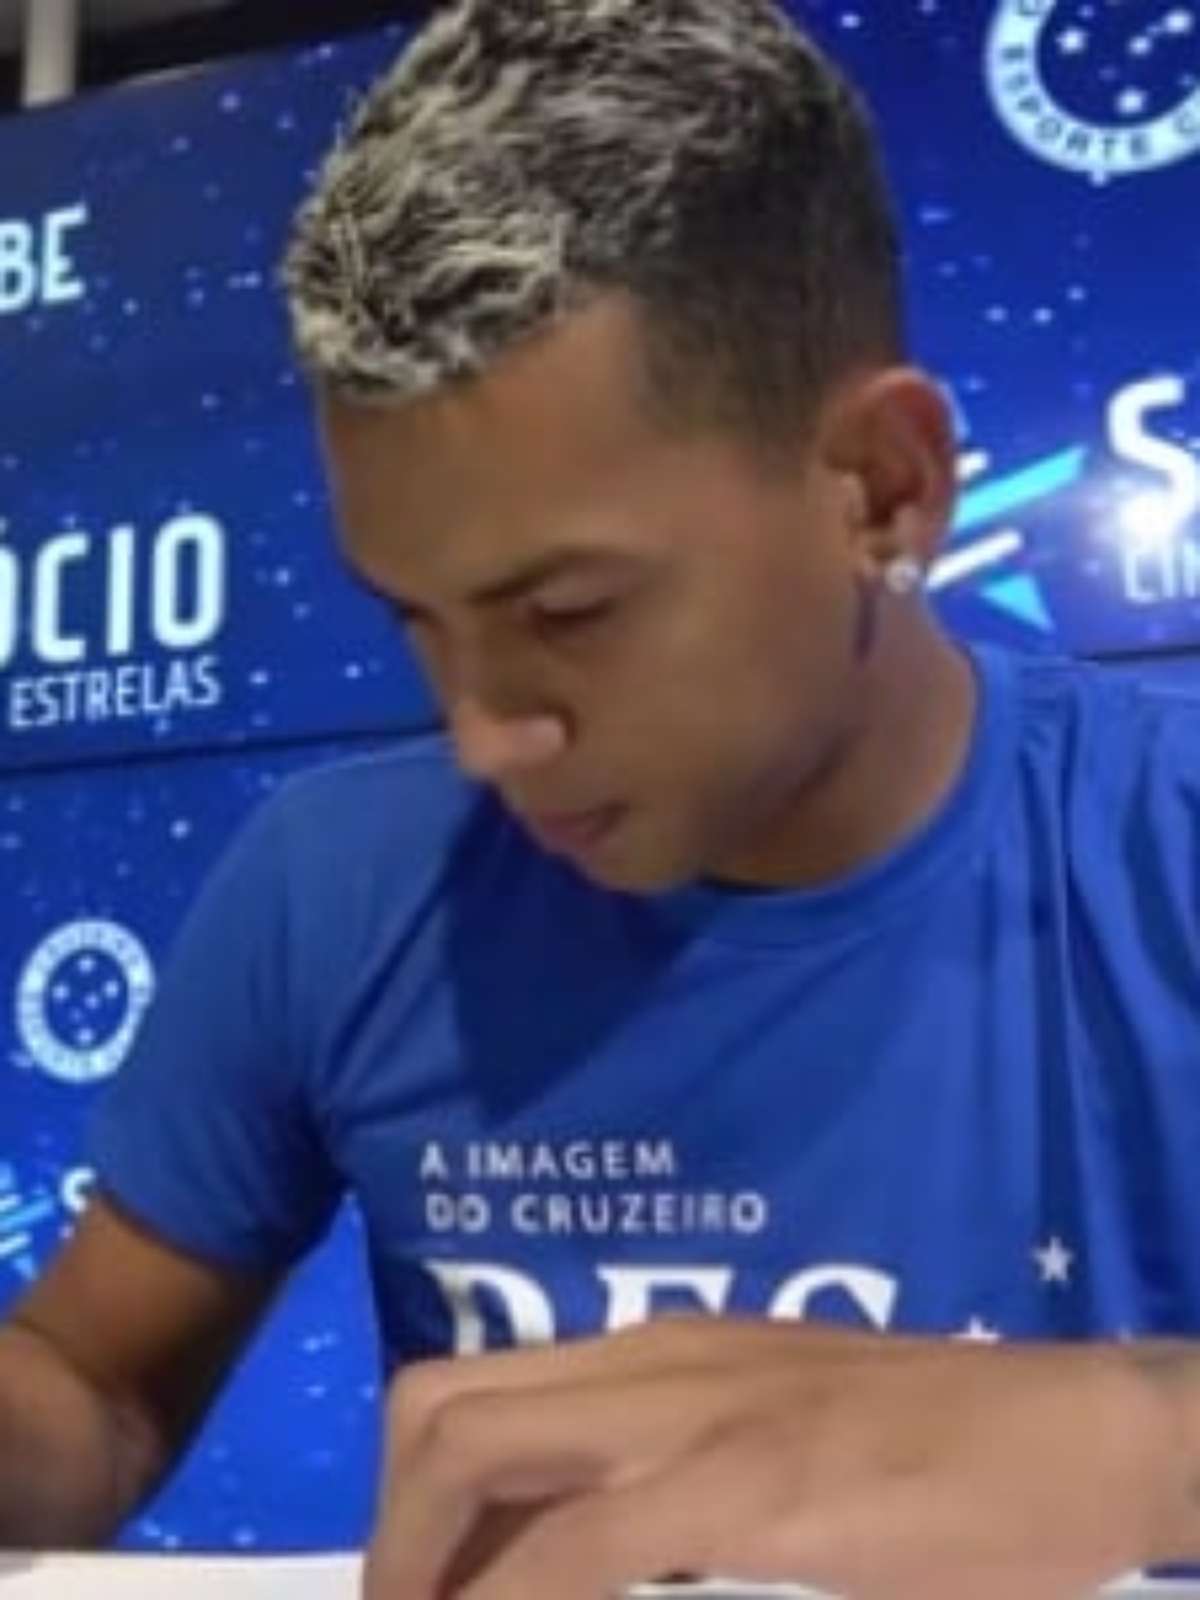 Volante ex-Grêmio é apresentado no Cruzeiro:honrado de vestir essa camisa  - 23/01/2020 - UOL Esporte